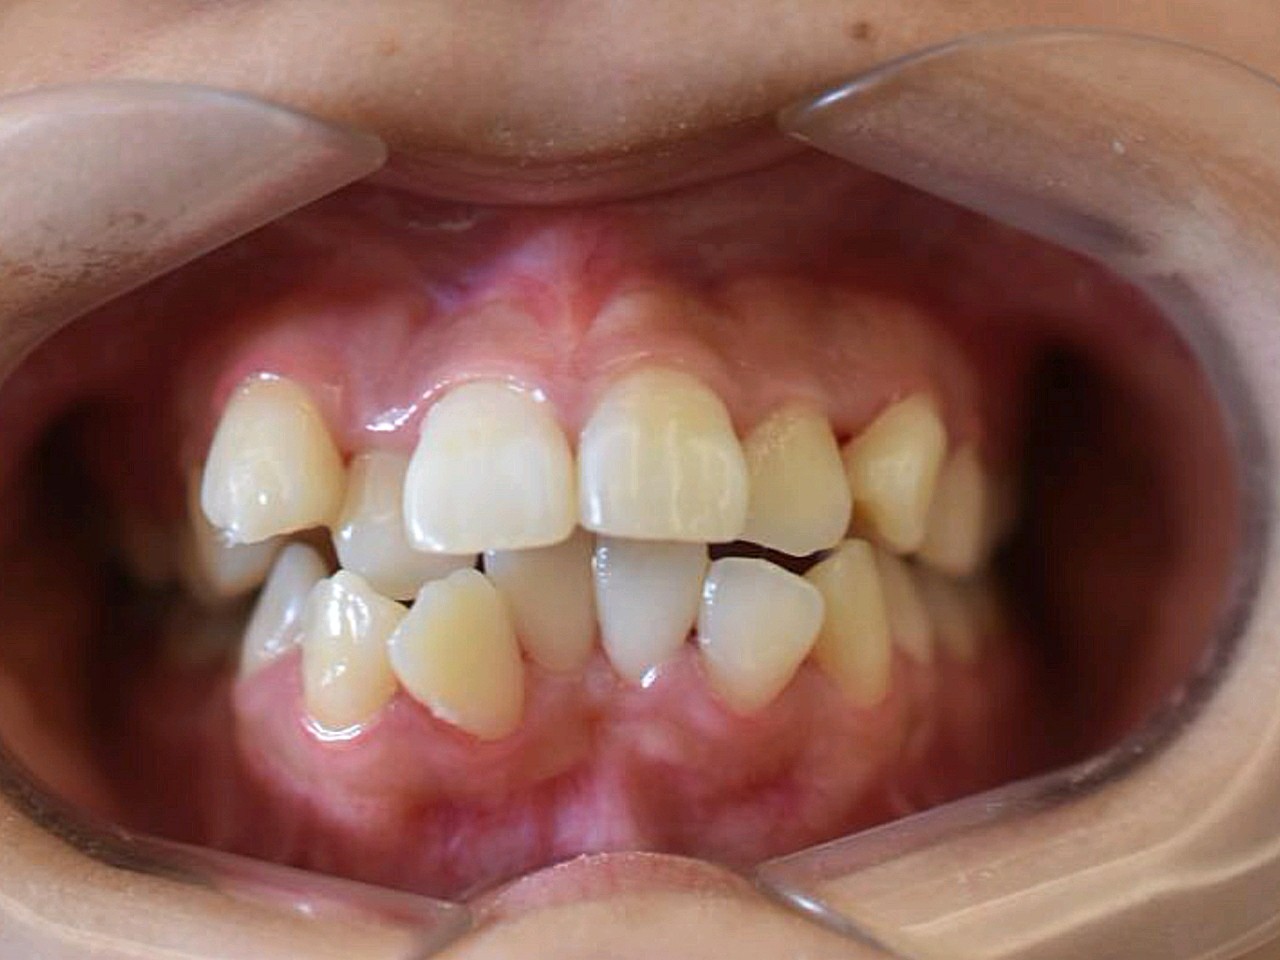 2018年6月做的矫正,牙齿前突比较严重,做了隐形矫正